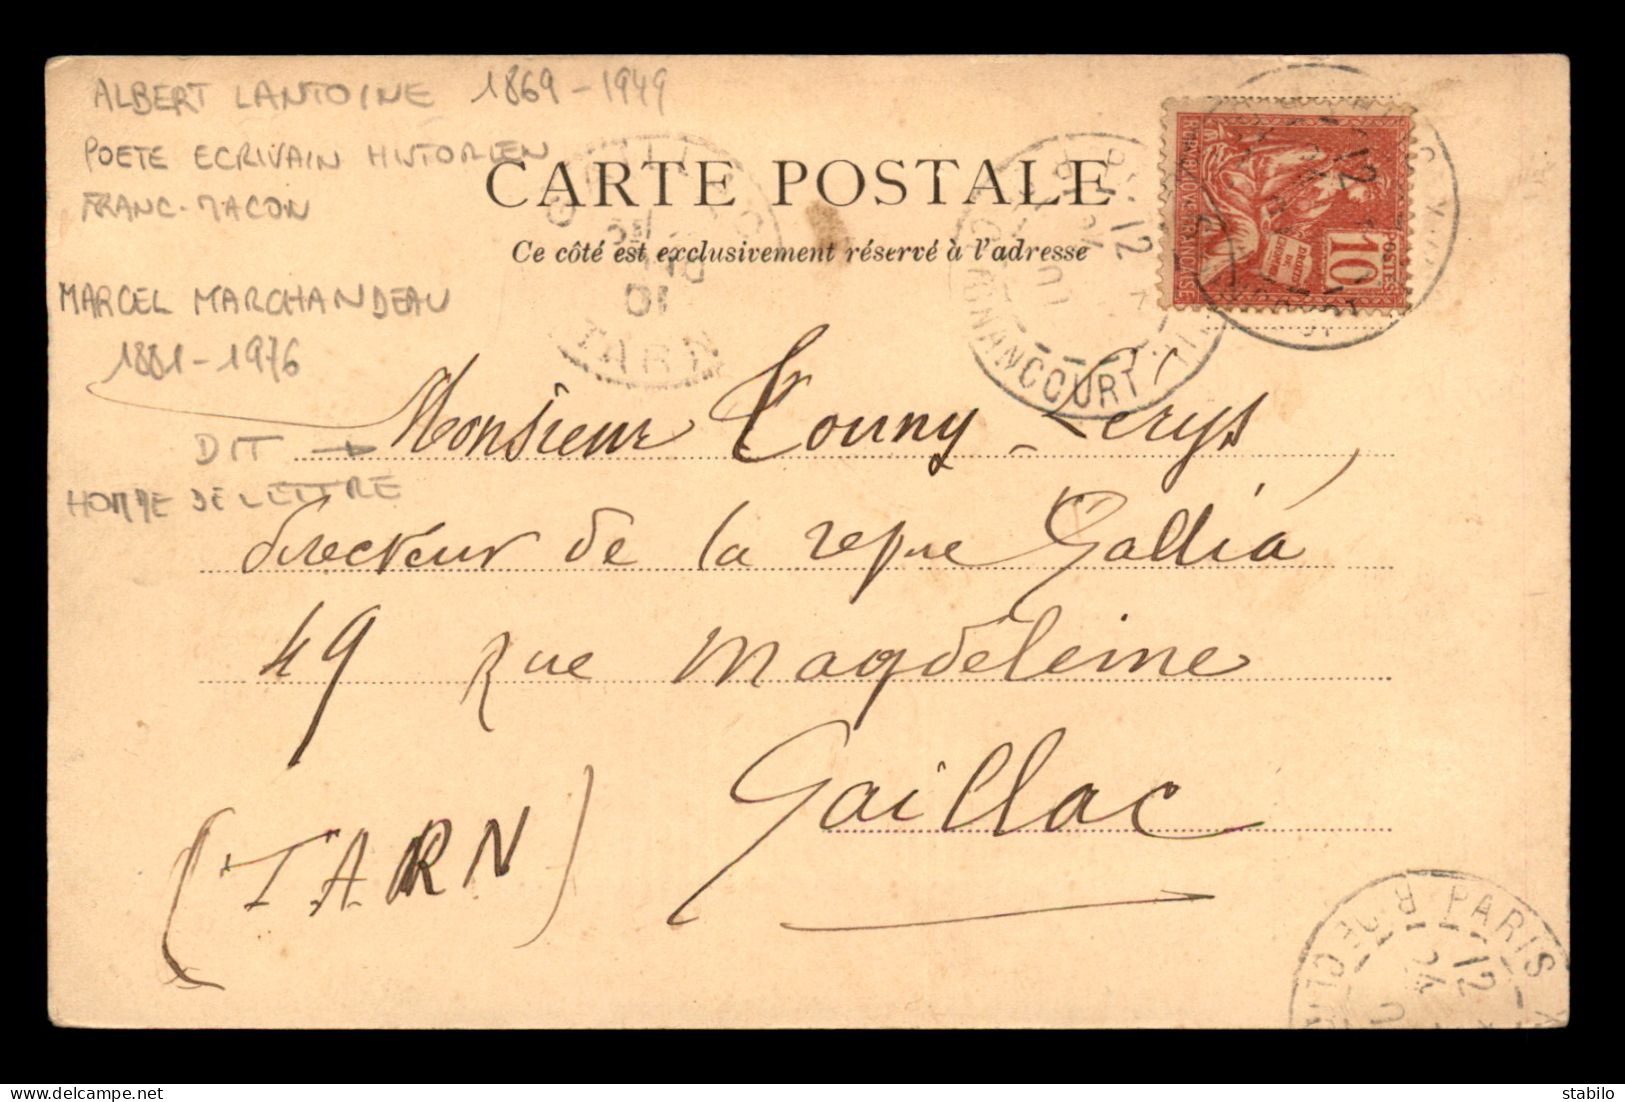 AUTOGRAPHE - ALBERT LANTOINE (1869-1949) POETE, FRANC-MACON A MARCEL MARCHANDEAU DIT TOUNY LERYS, POETE - Other & Unclassified